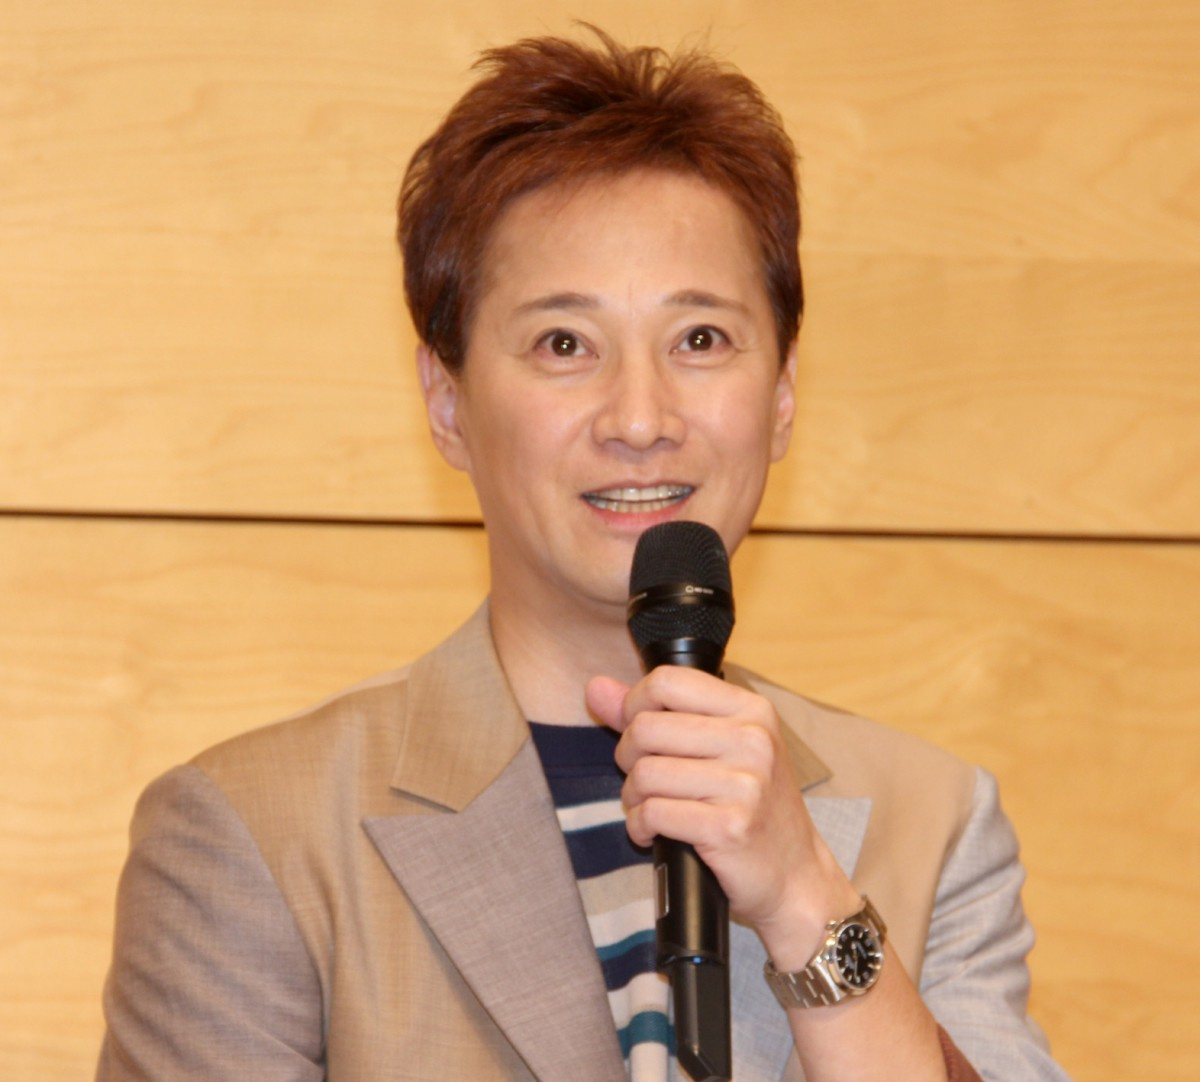 中居正広 ジャニーズを3月末で退社へ Smap解散から3年で決断 新会社は のんびりな会 Oricon News